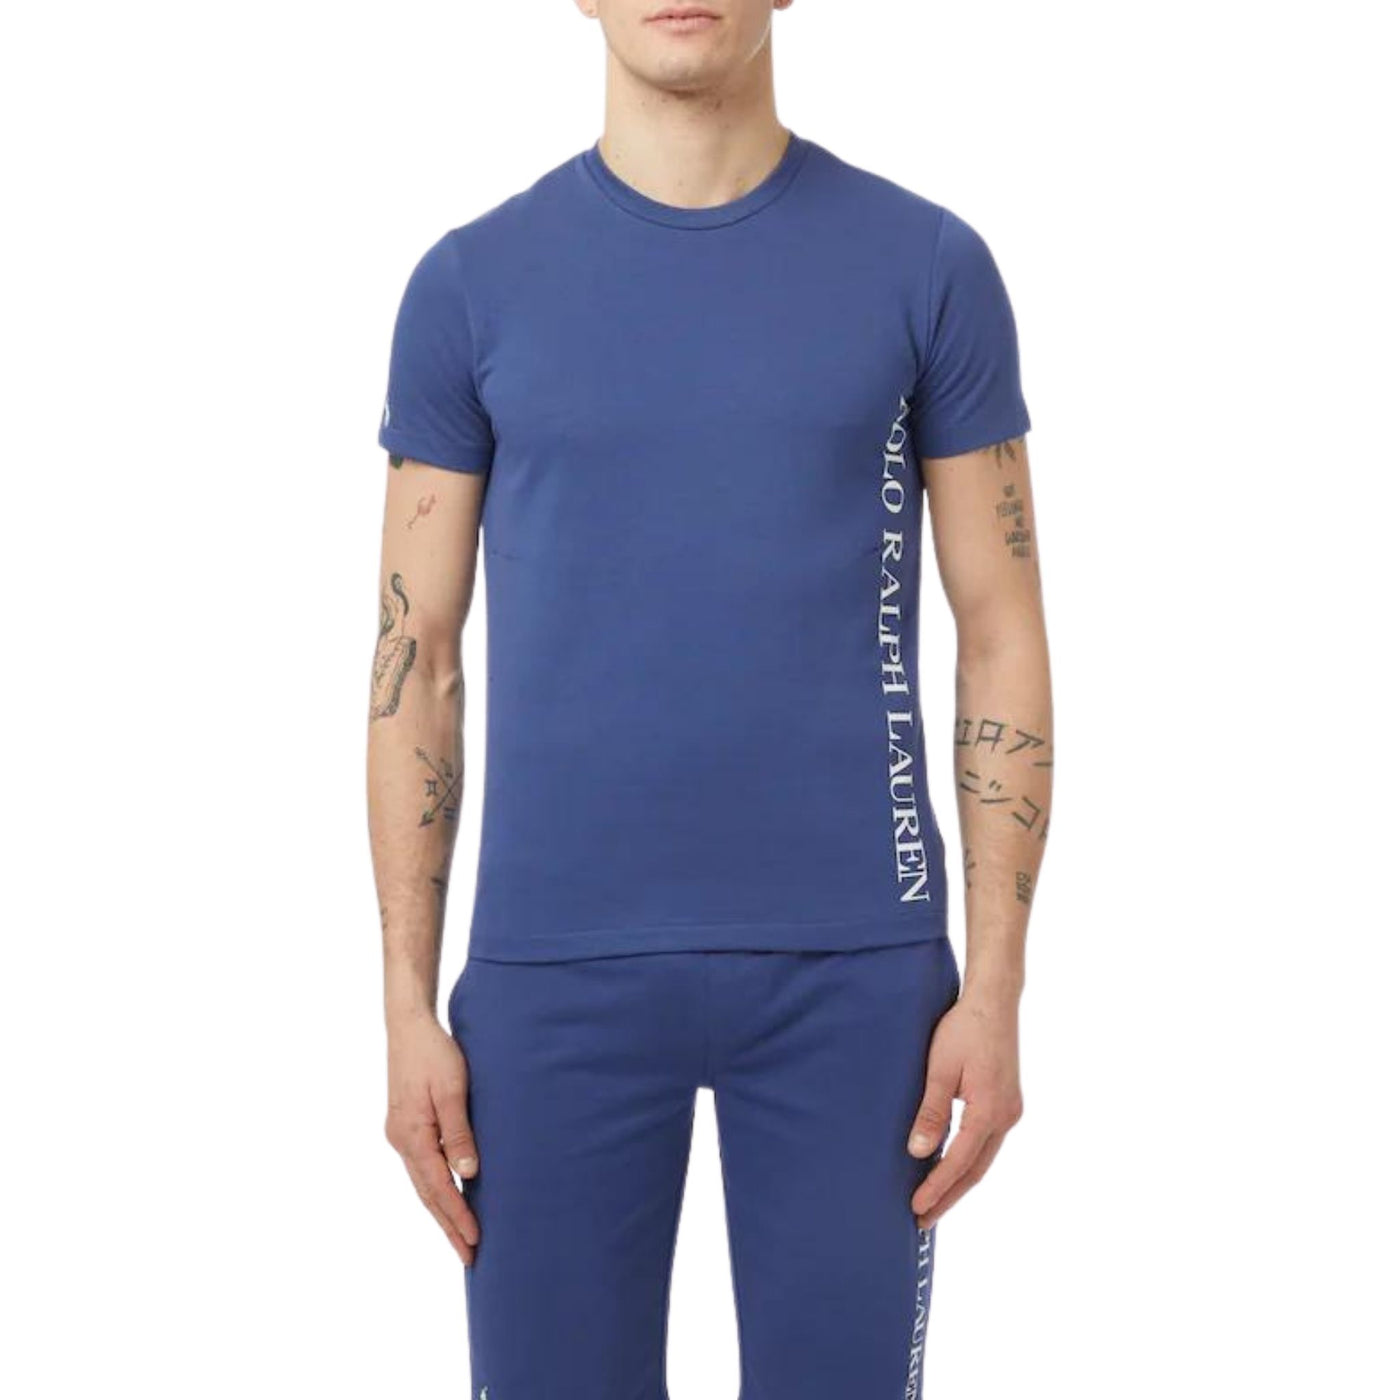 T-shirt uomo blu firmata Polo Ralph Lauren su modello vista frontale